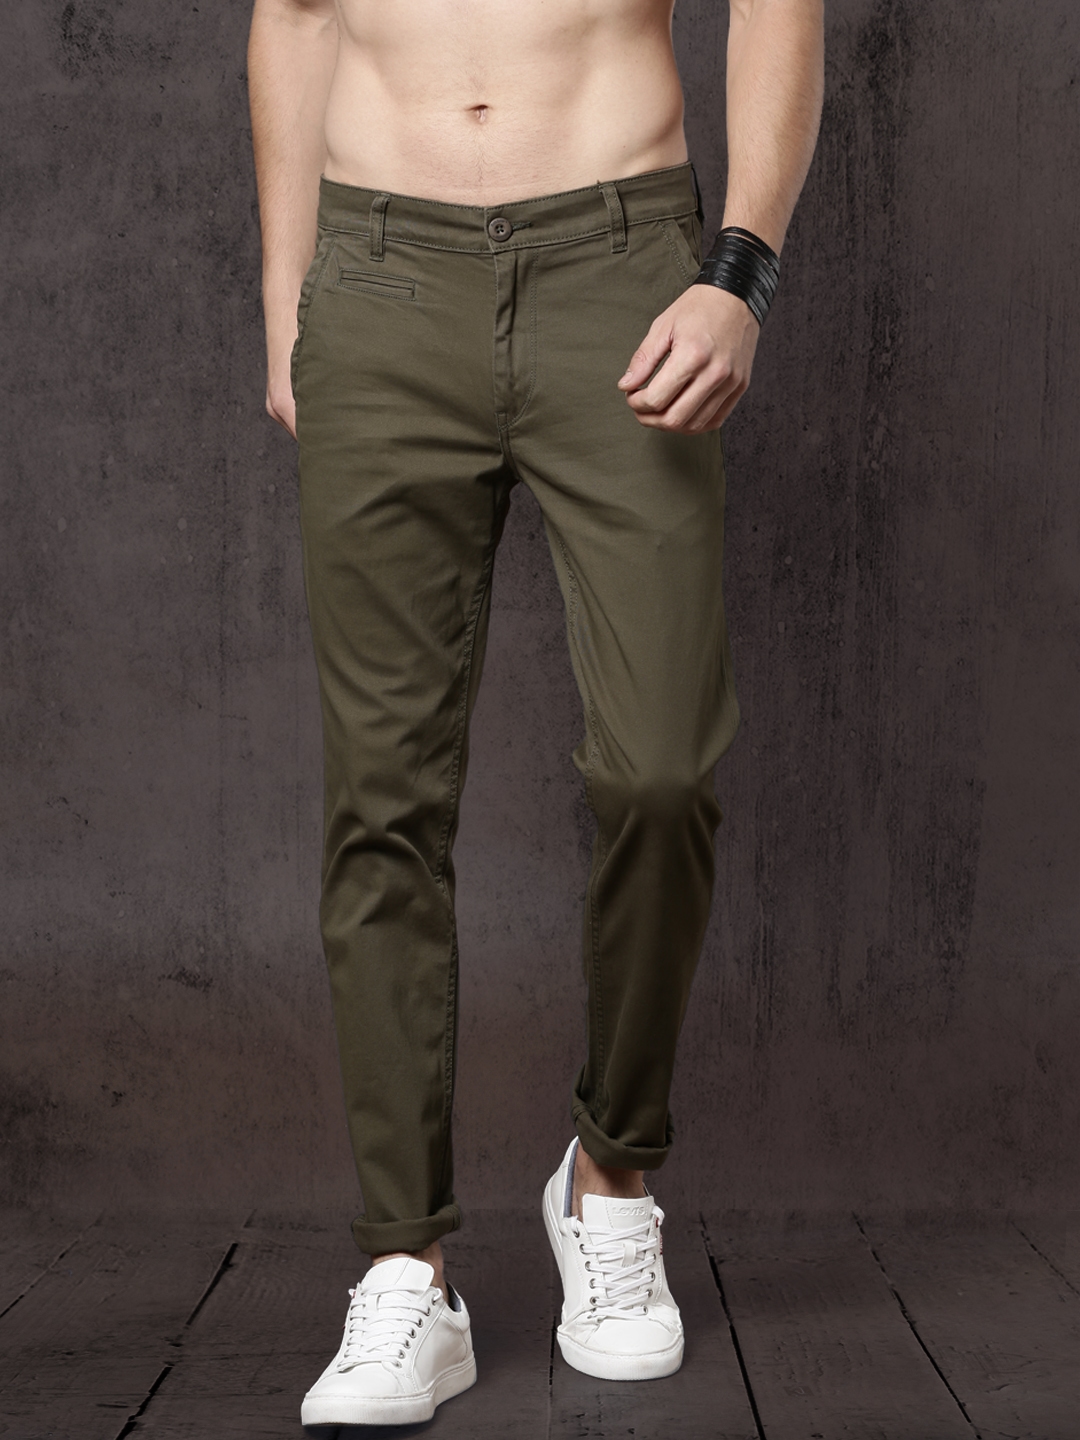 Lycra Olive Green Pants For Mens Under 400